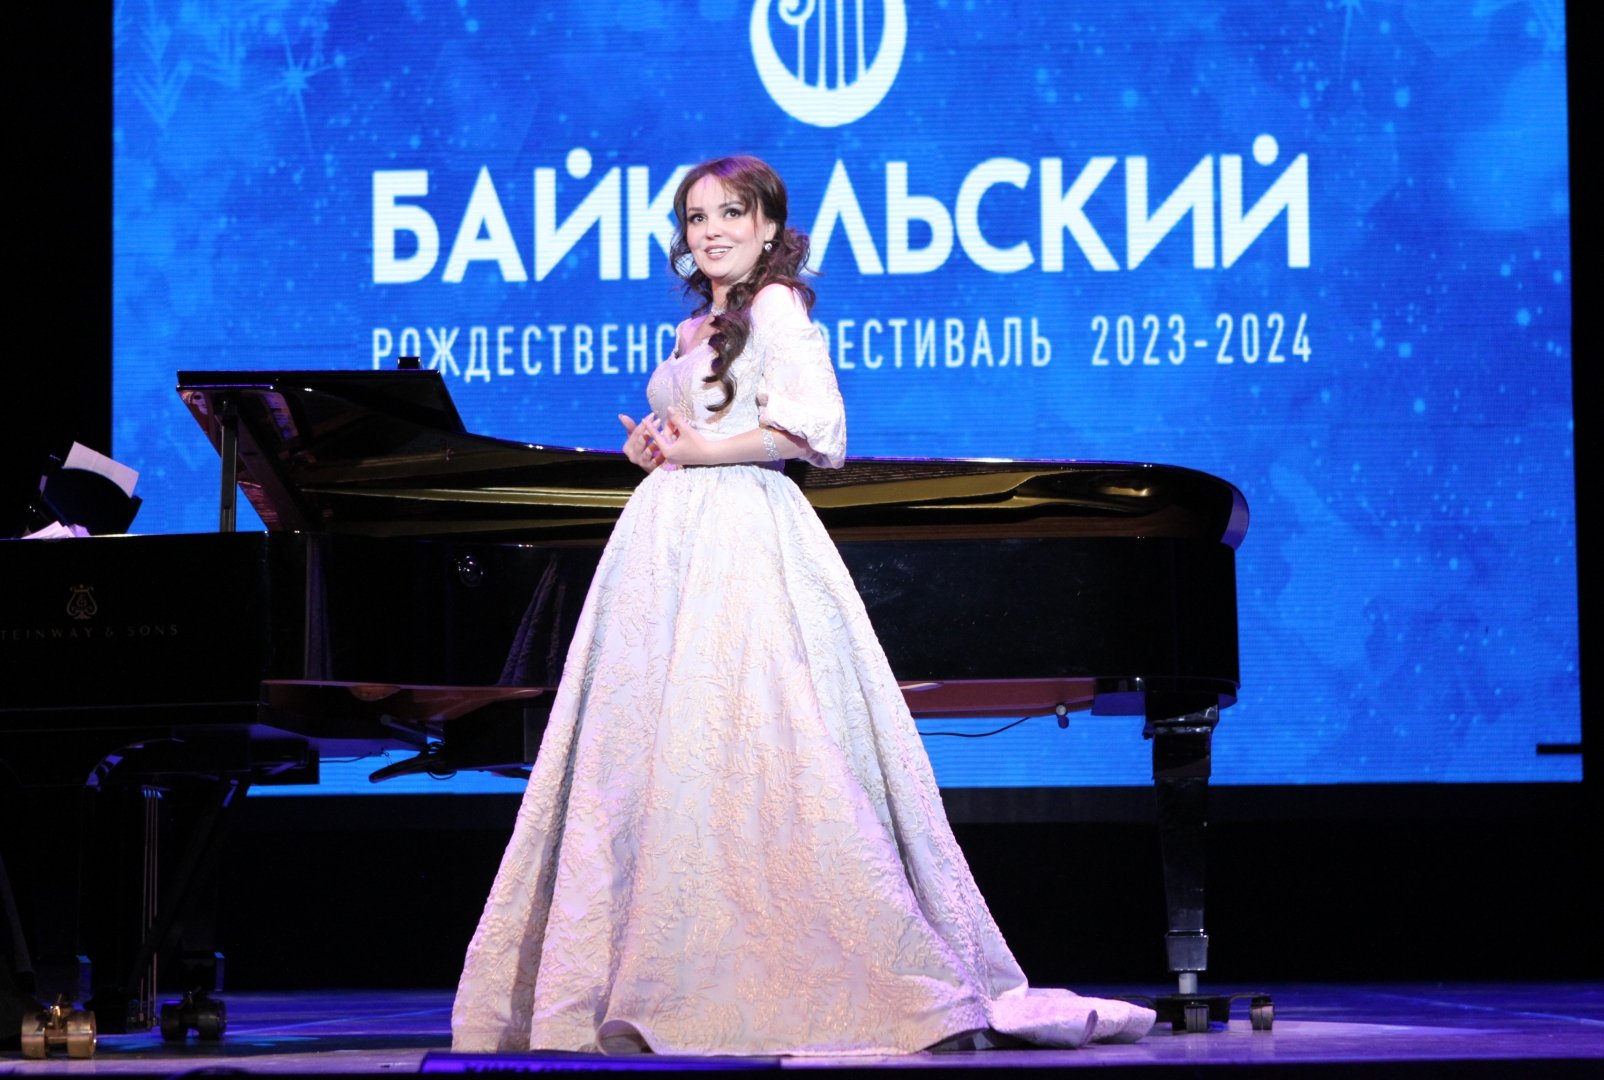 Эльнара Мамедова выступила на Байкальском фестивале